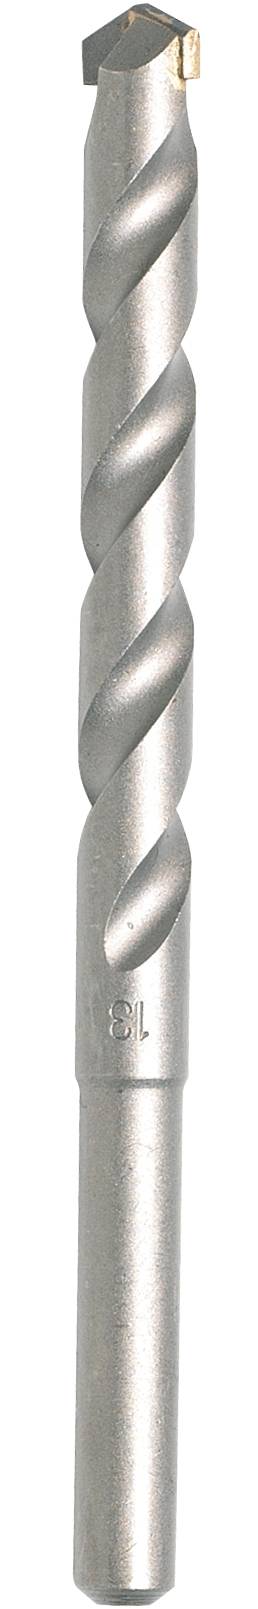 Makita D-05240 Carbide metal Masonry twist drill bit 5 mm Total ...